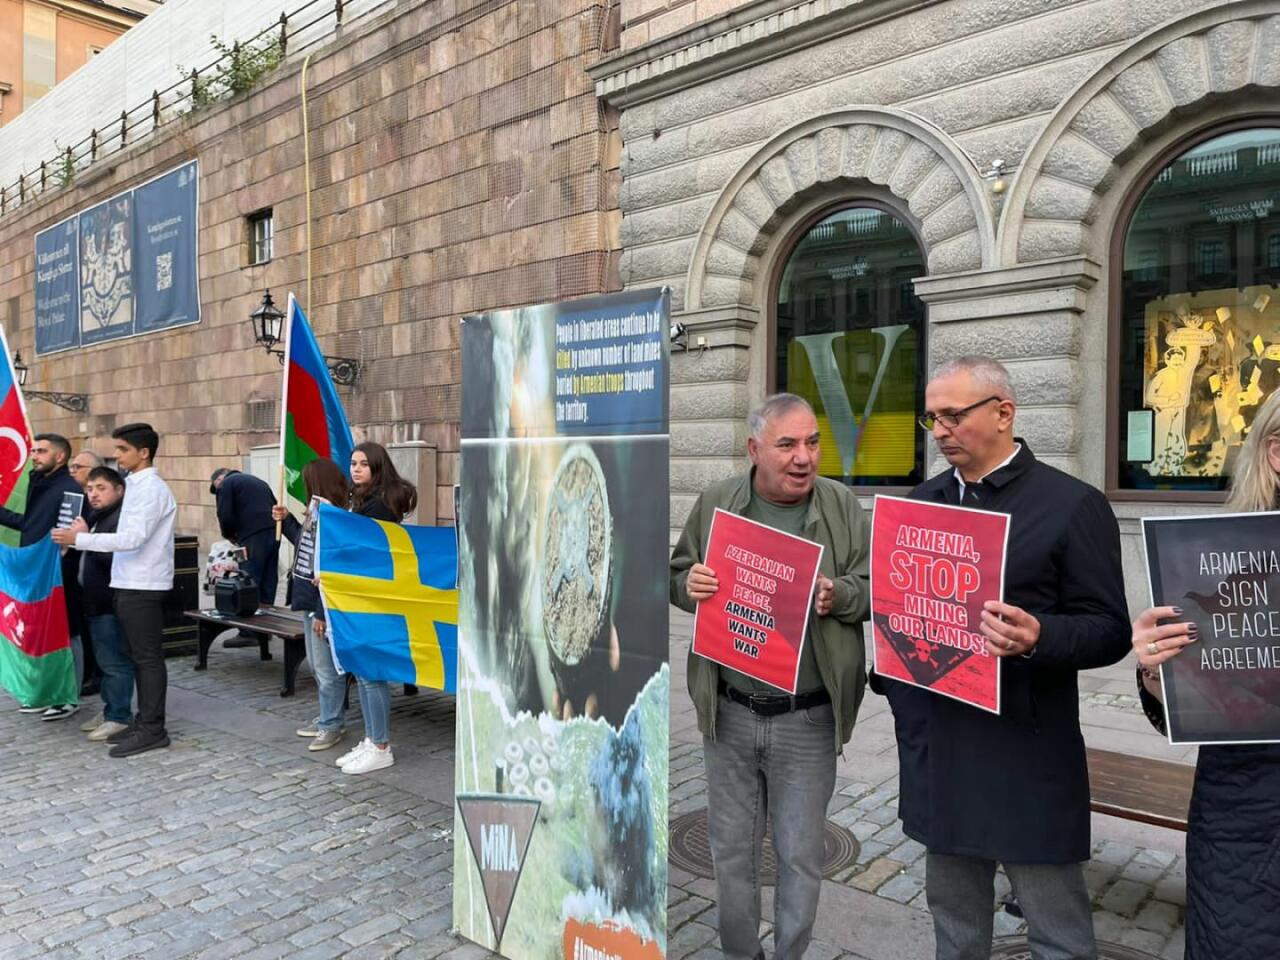 Aзербайджанская община провела пикет перед парламентом Швеции